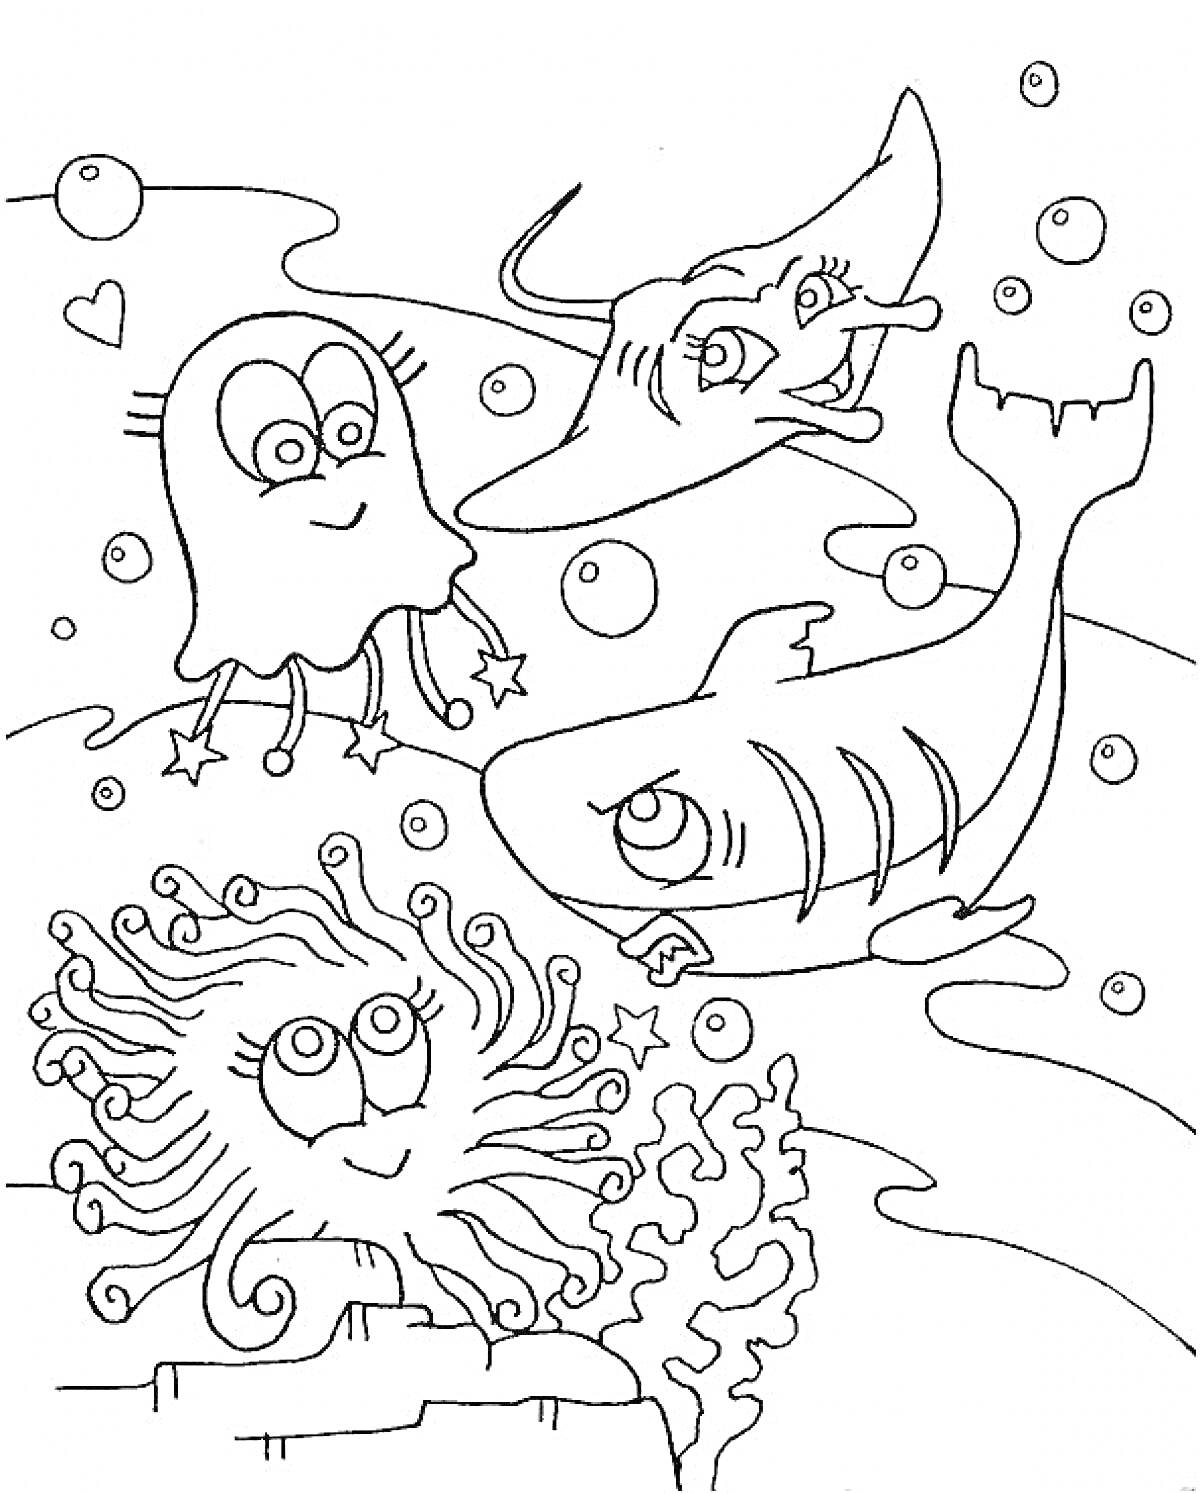 Раскраска Медуза, скат, акула и морское дно с кораллами и пузырями